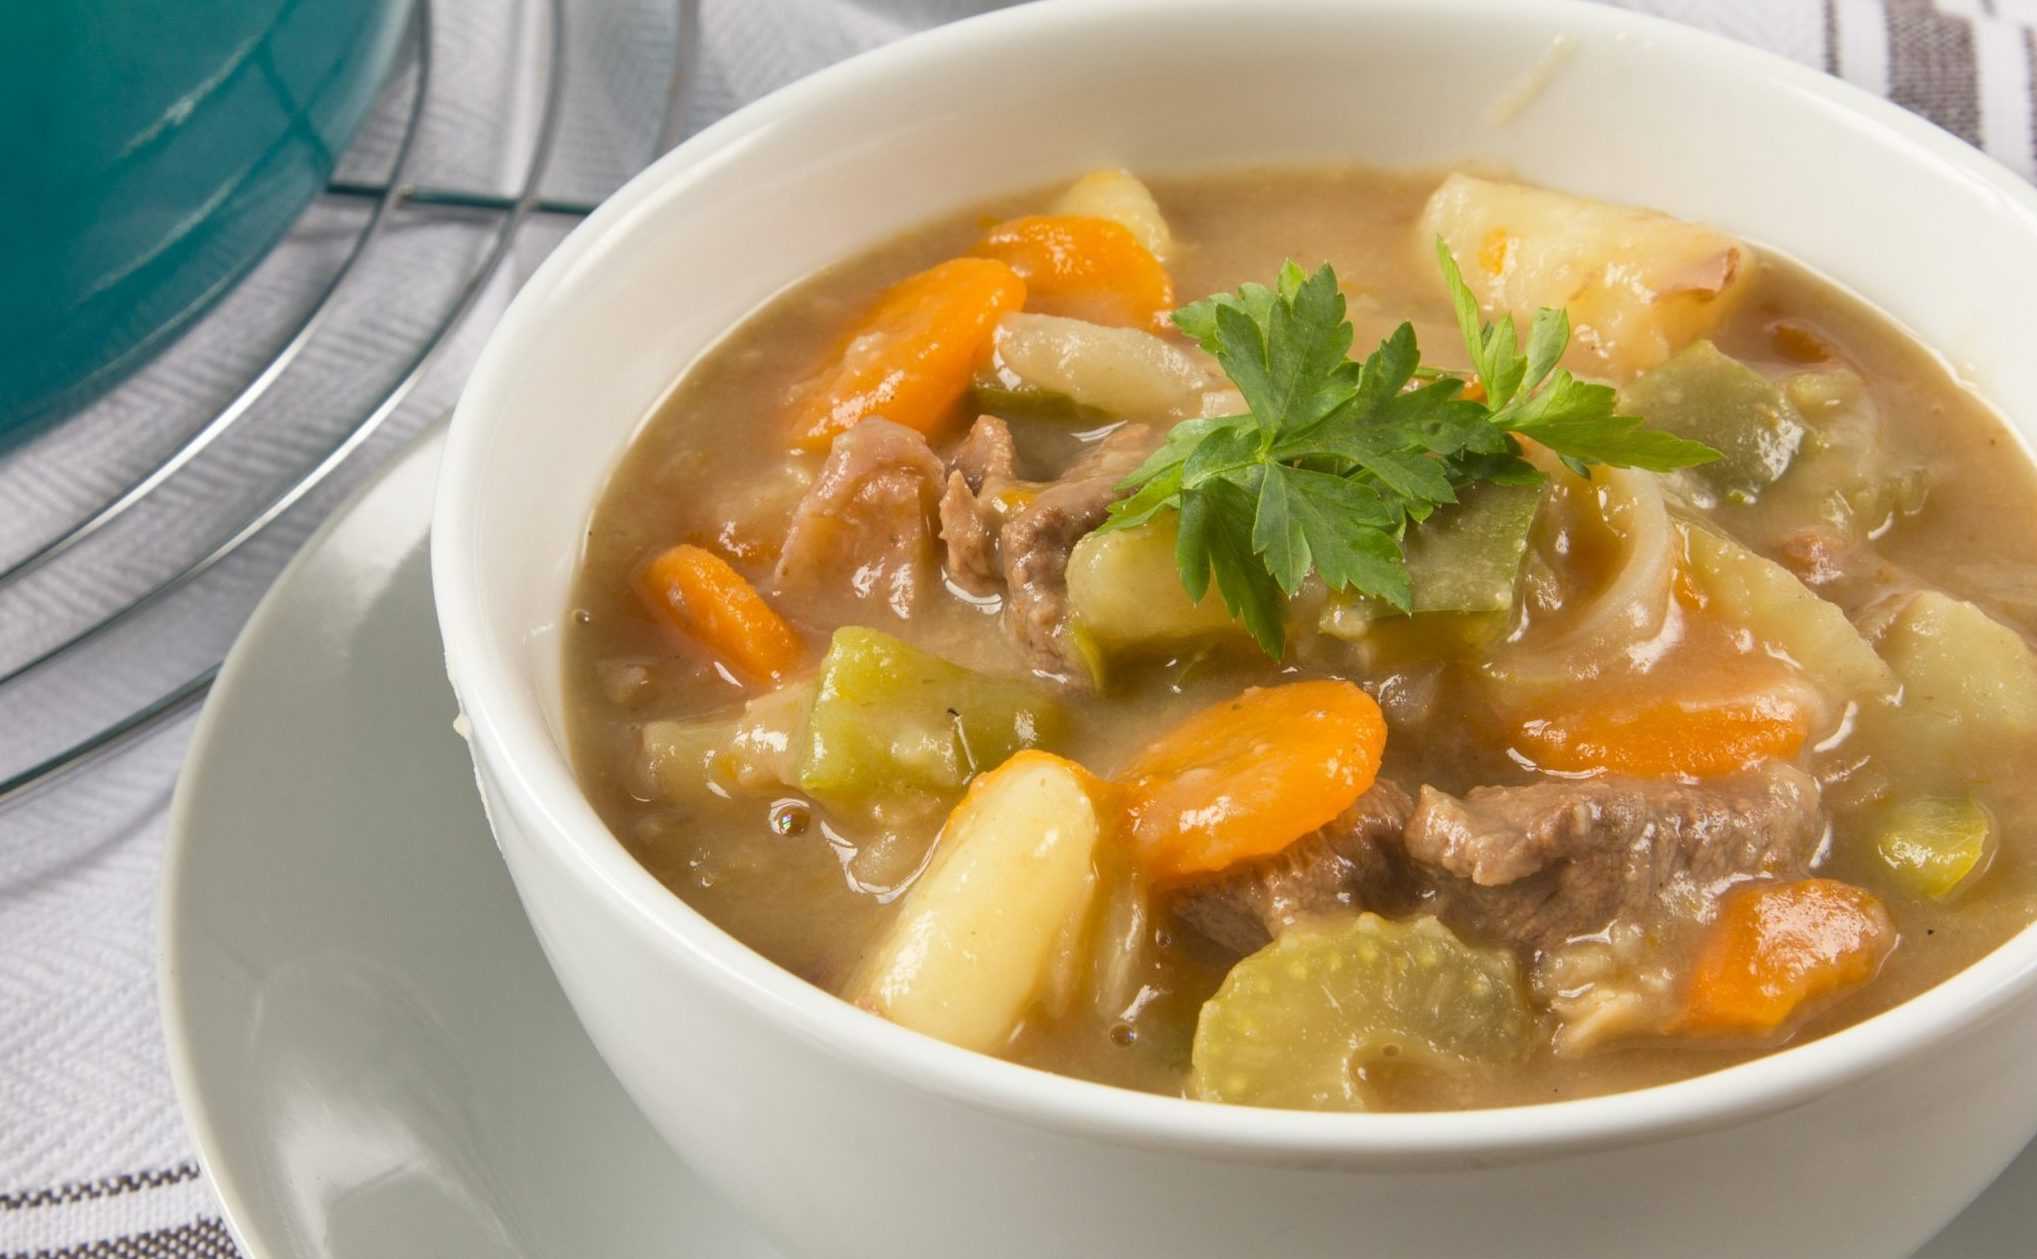 Два проверенных рецепта супа с мясом и картофелем